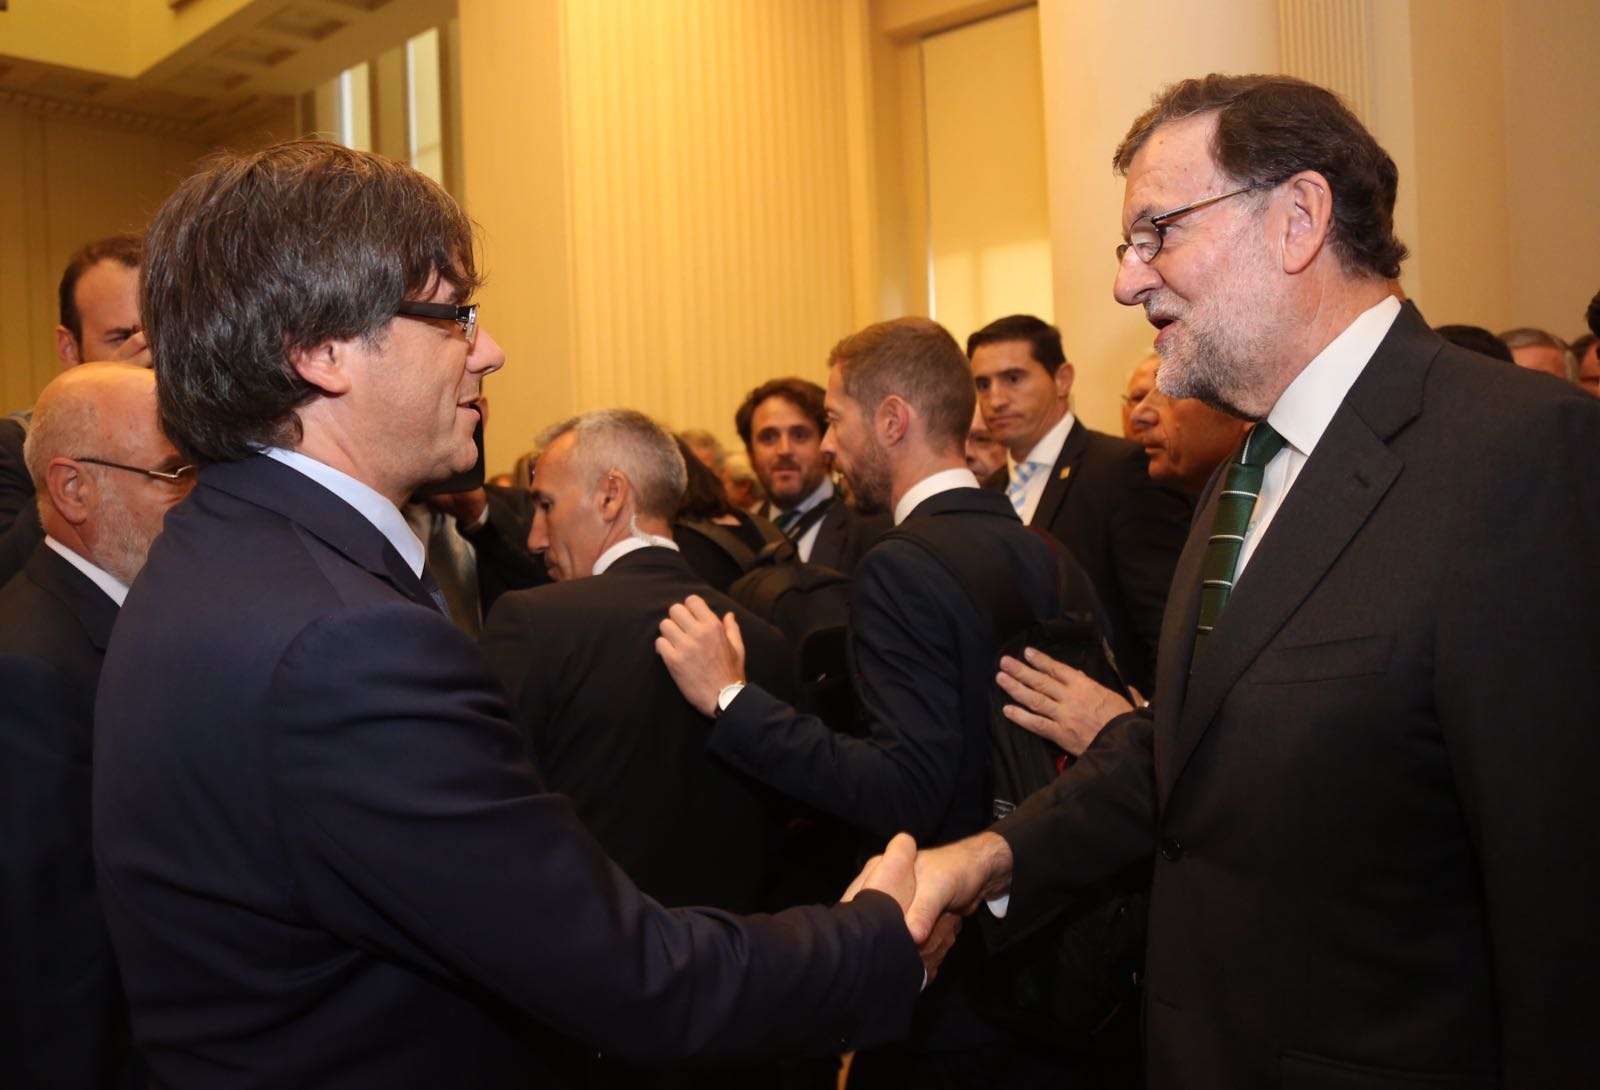 La salutació entre Rajoy i Puigdemont a Porto i les pulles posteriors